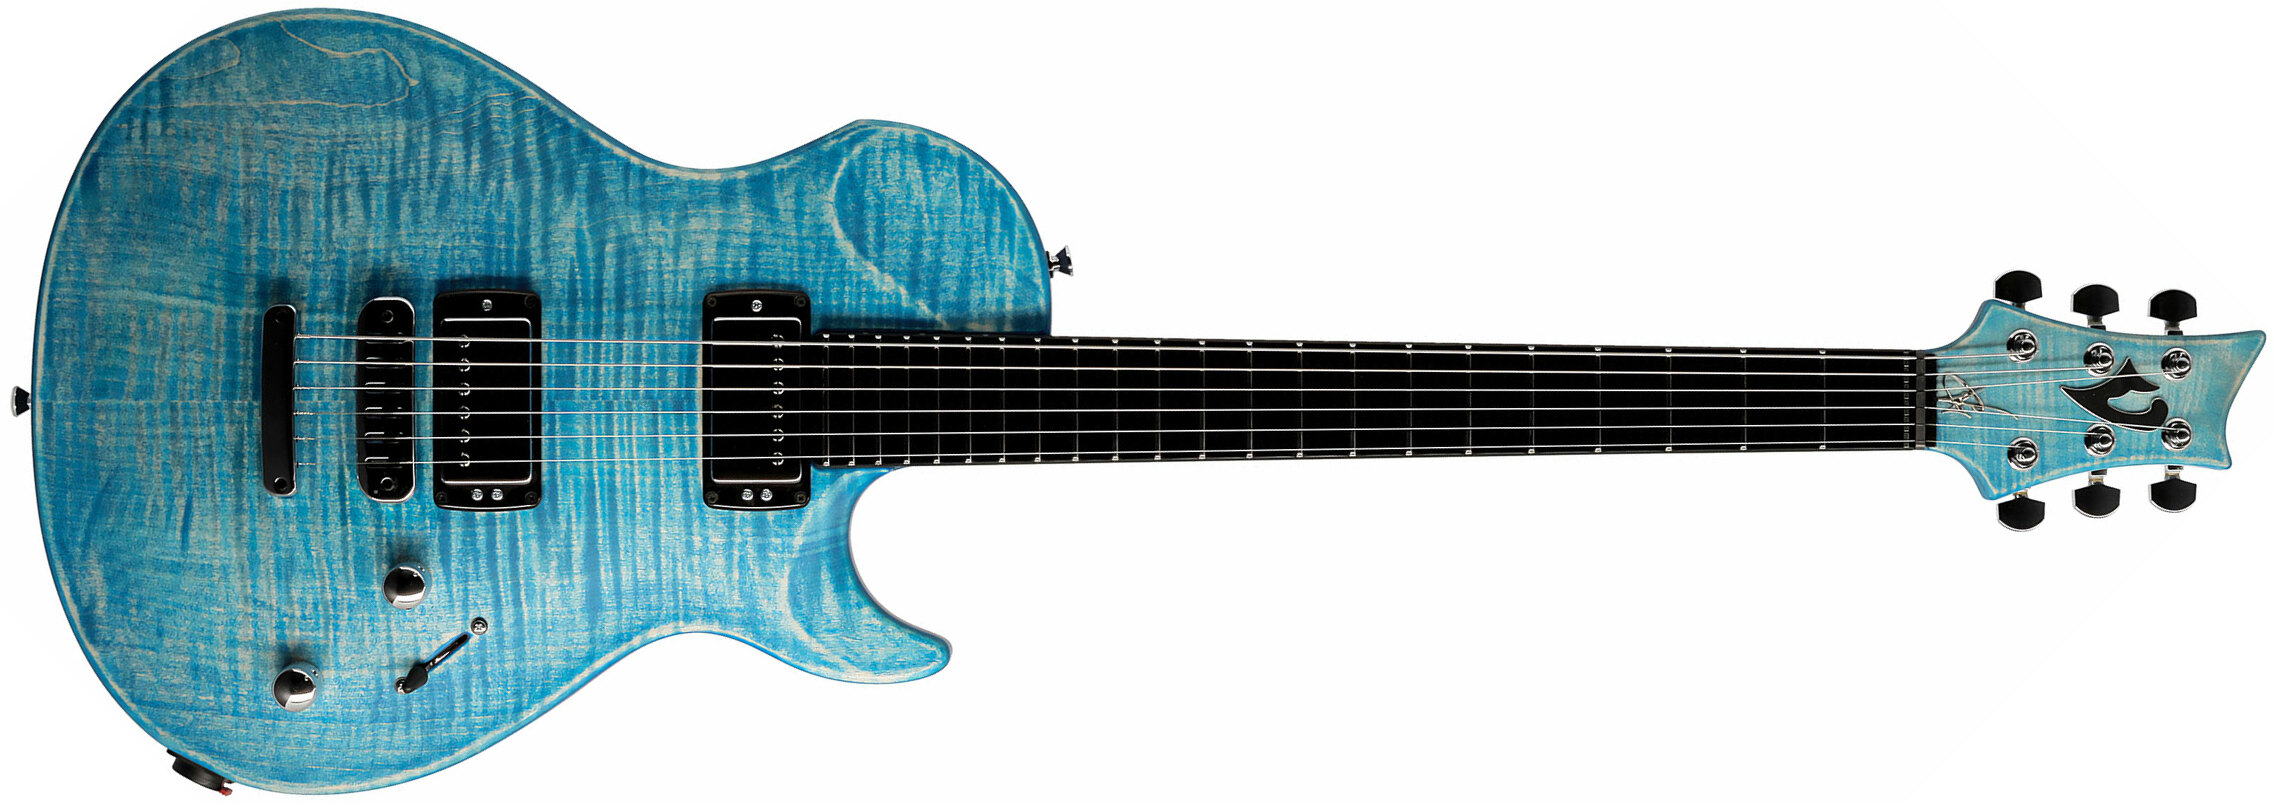 Vigier G.v. Wood 2h Ht Phe - Stonewash Blue Matt - Enkel gesneden elektrische gitaar - Main picture